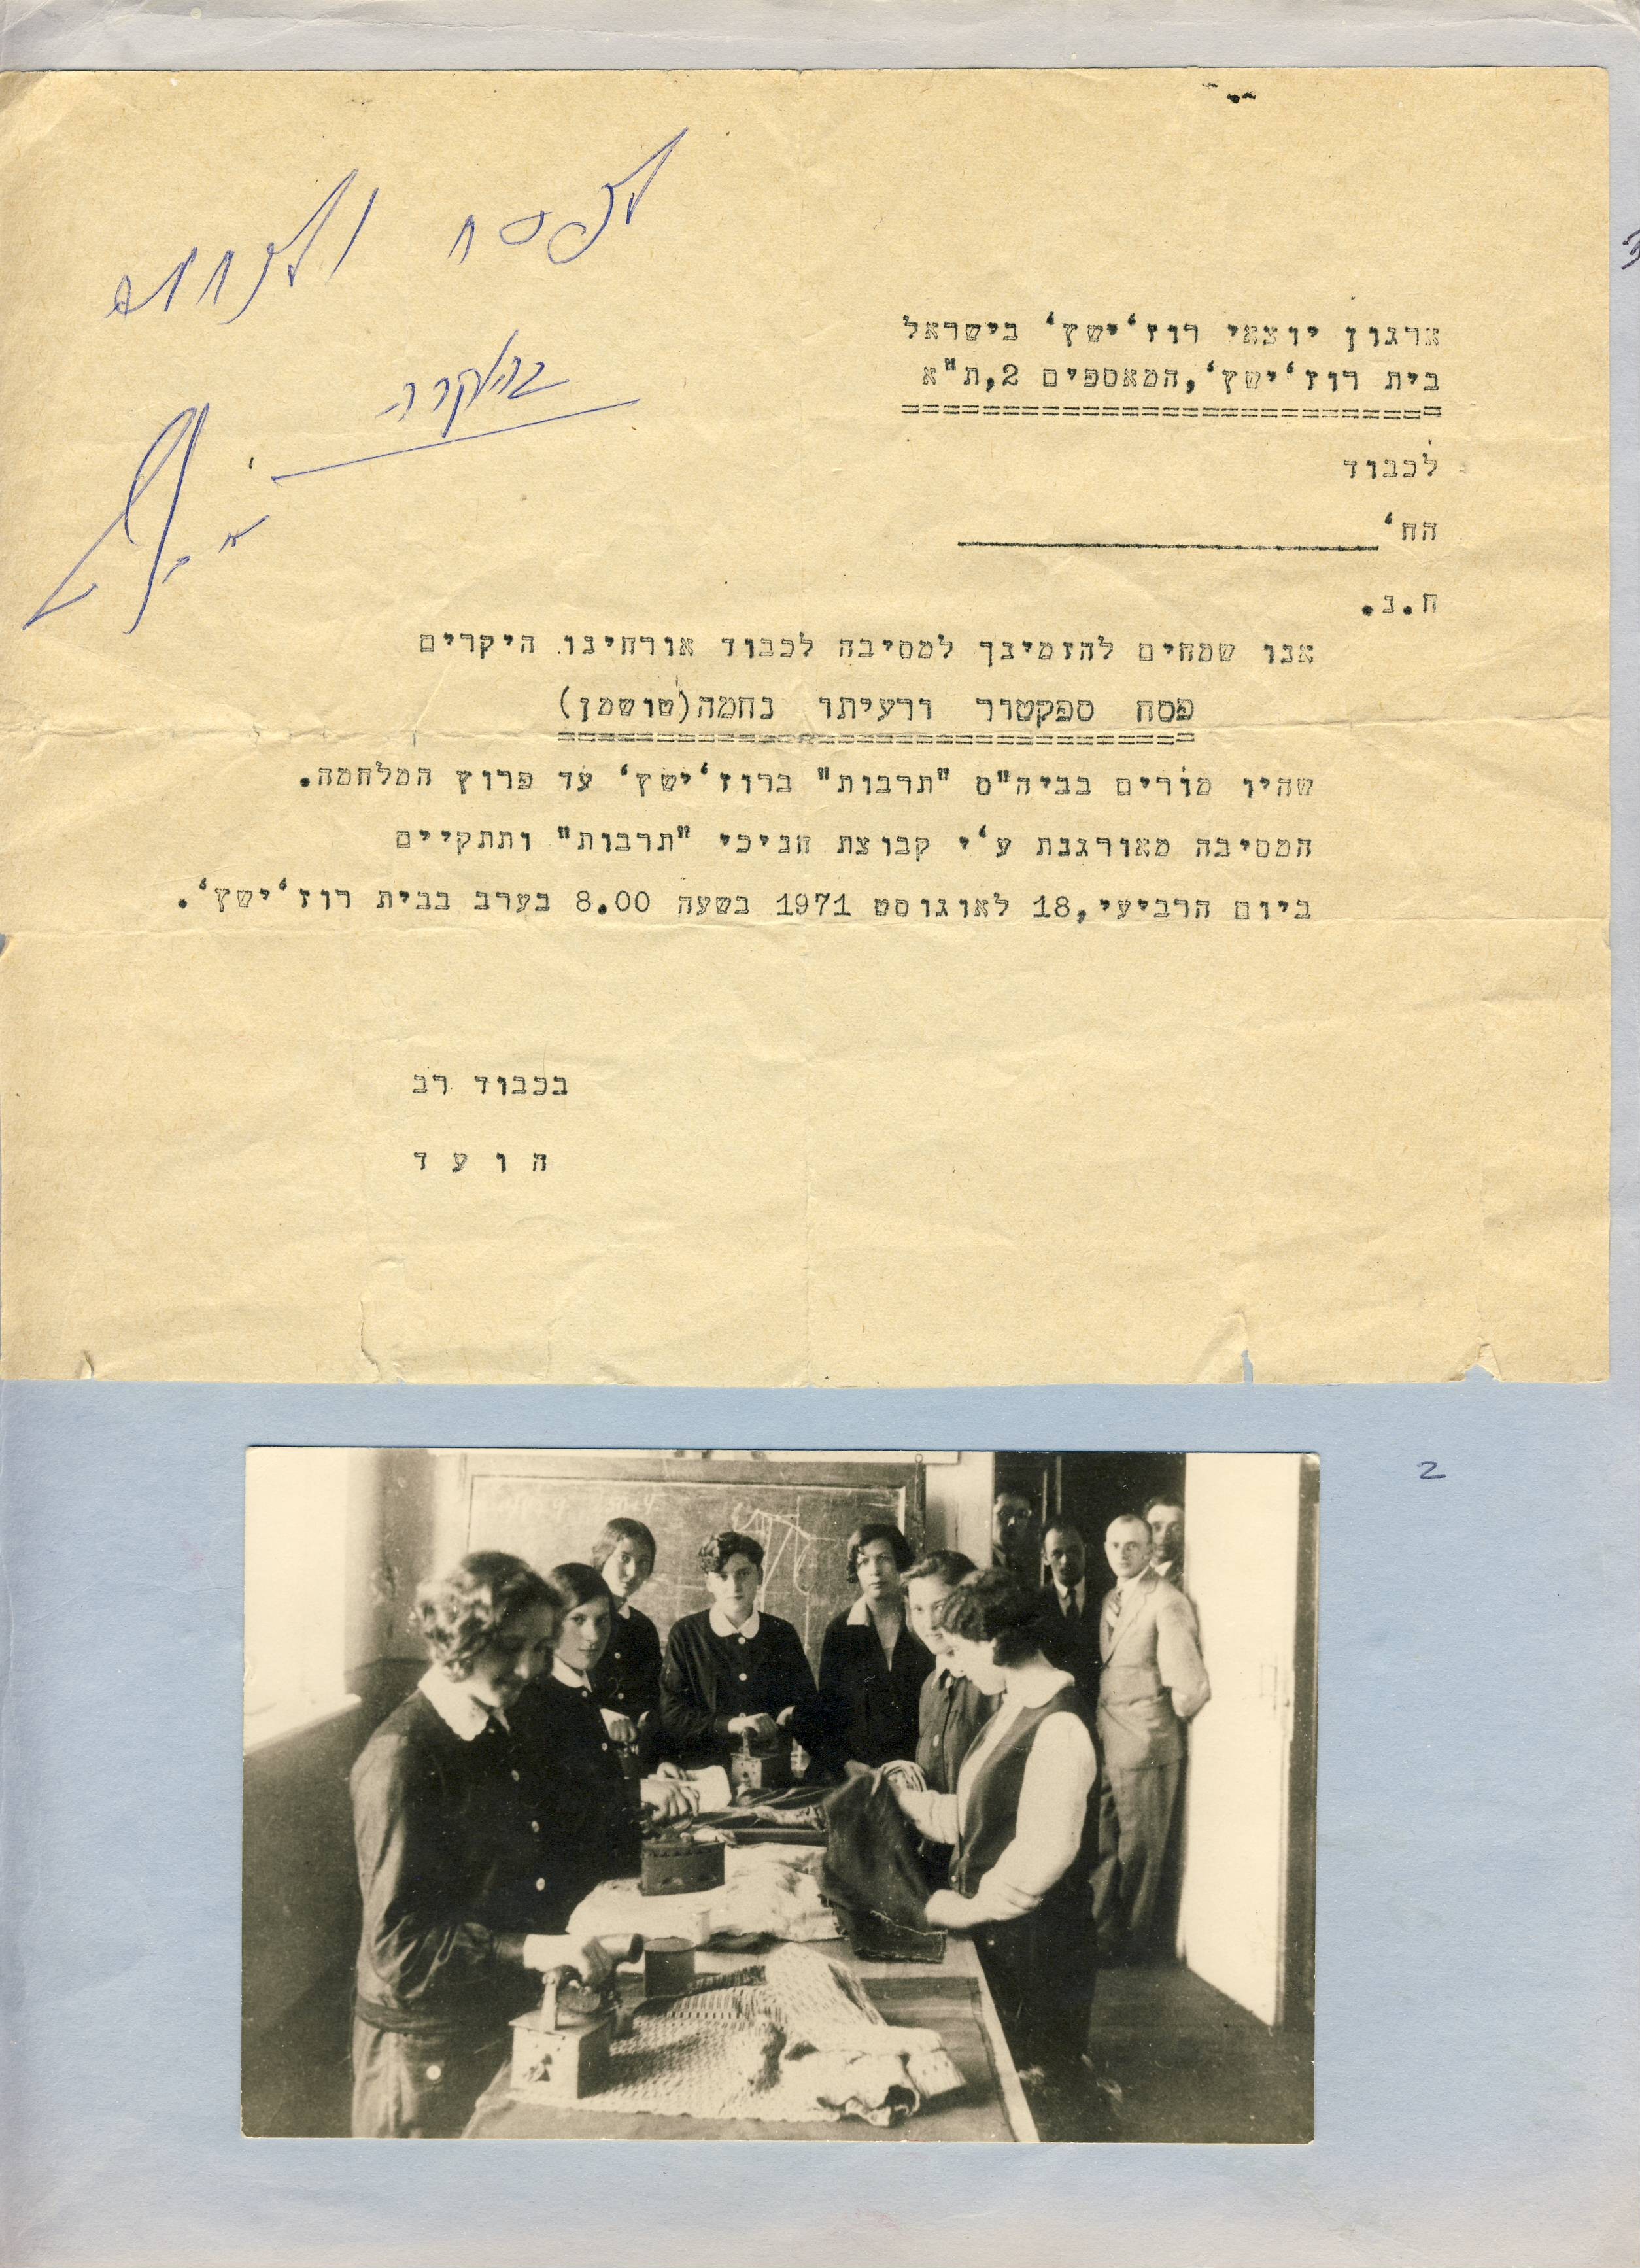 Certificate from Yad Vashem in 1971